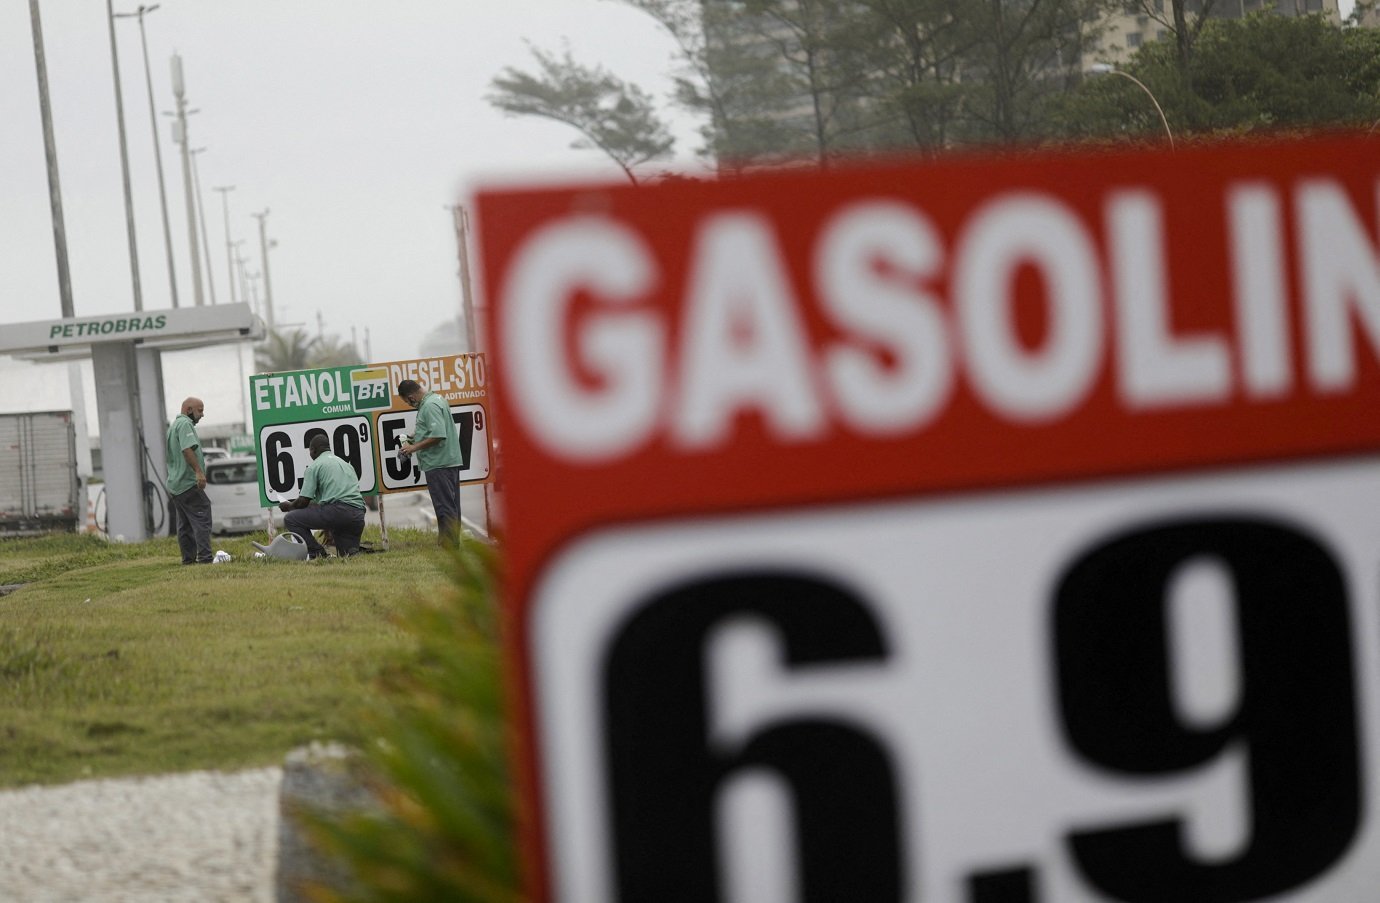 Funcionários atualizam preços dos combustíveis em posto de gasolina